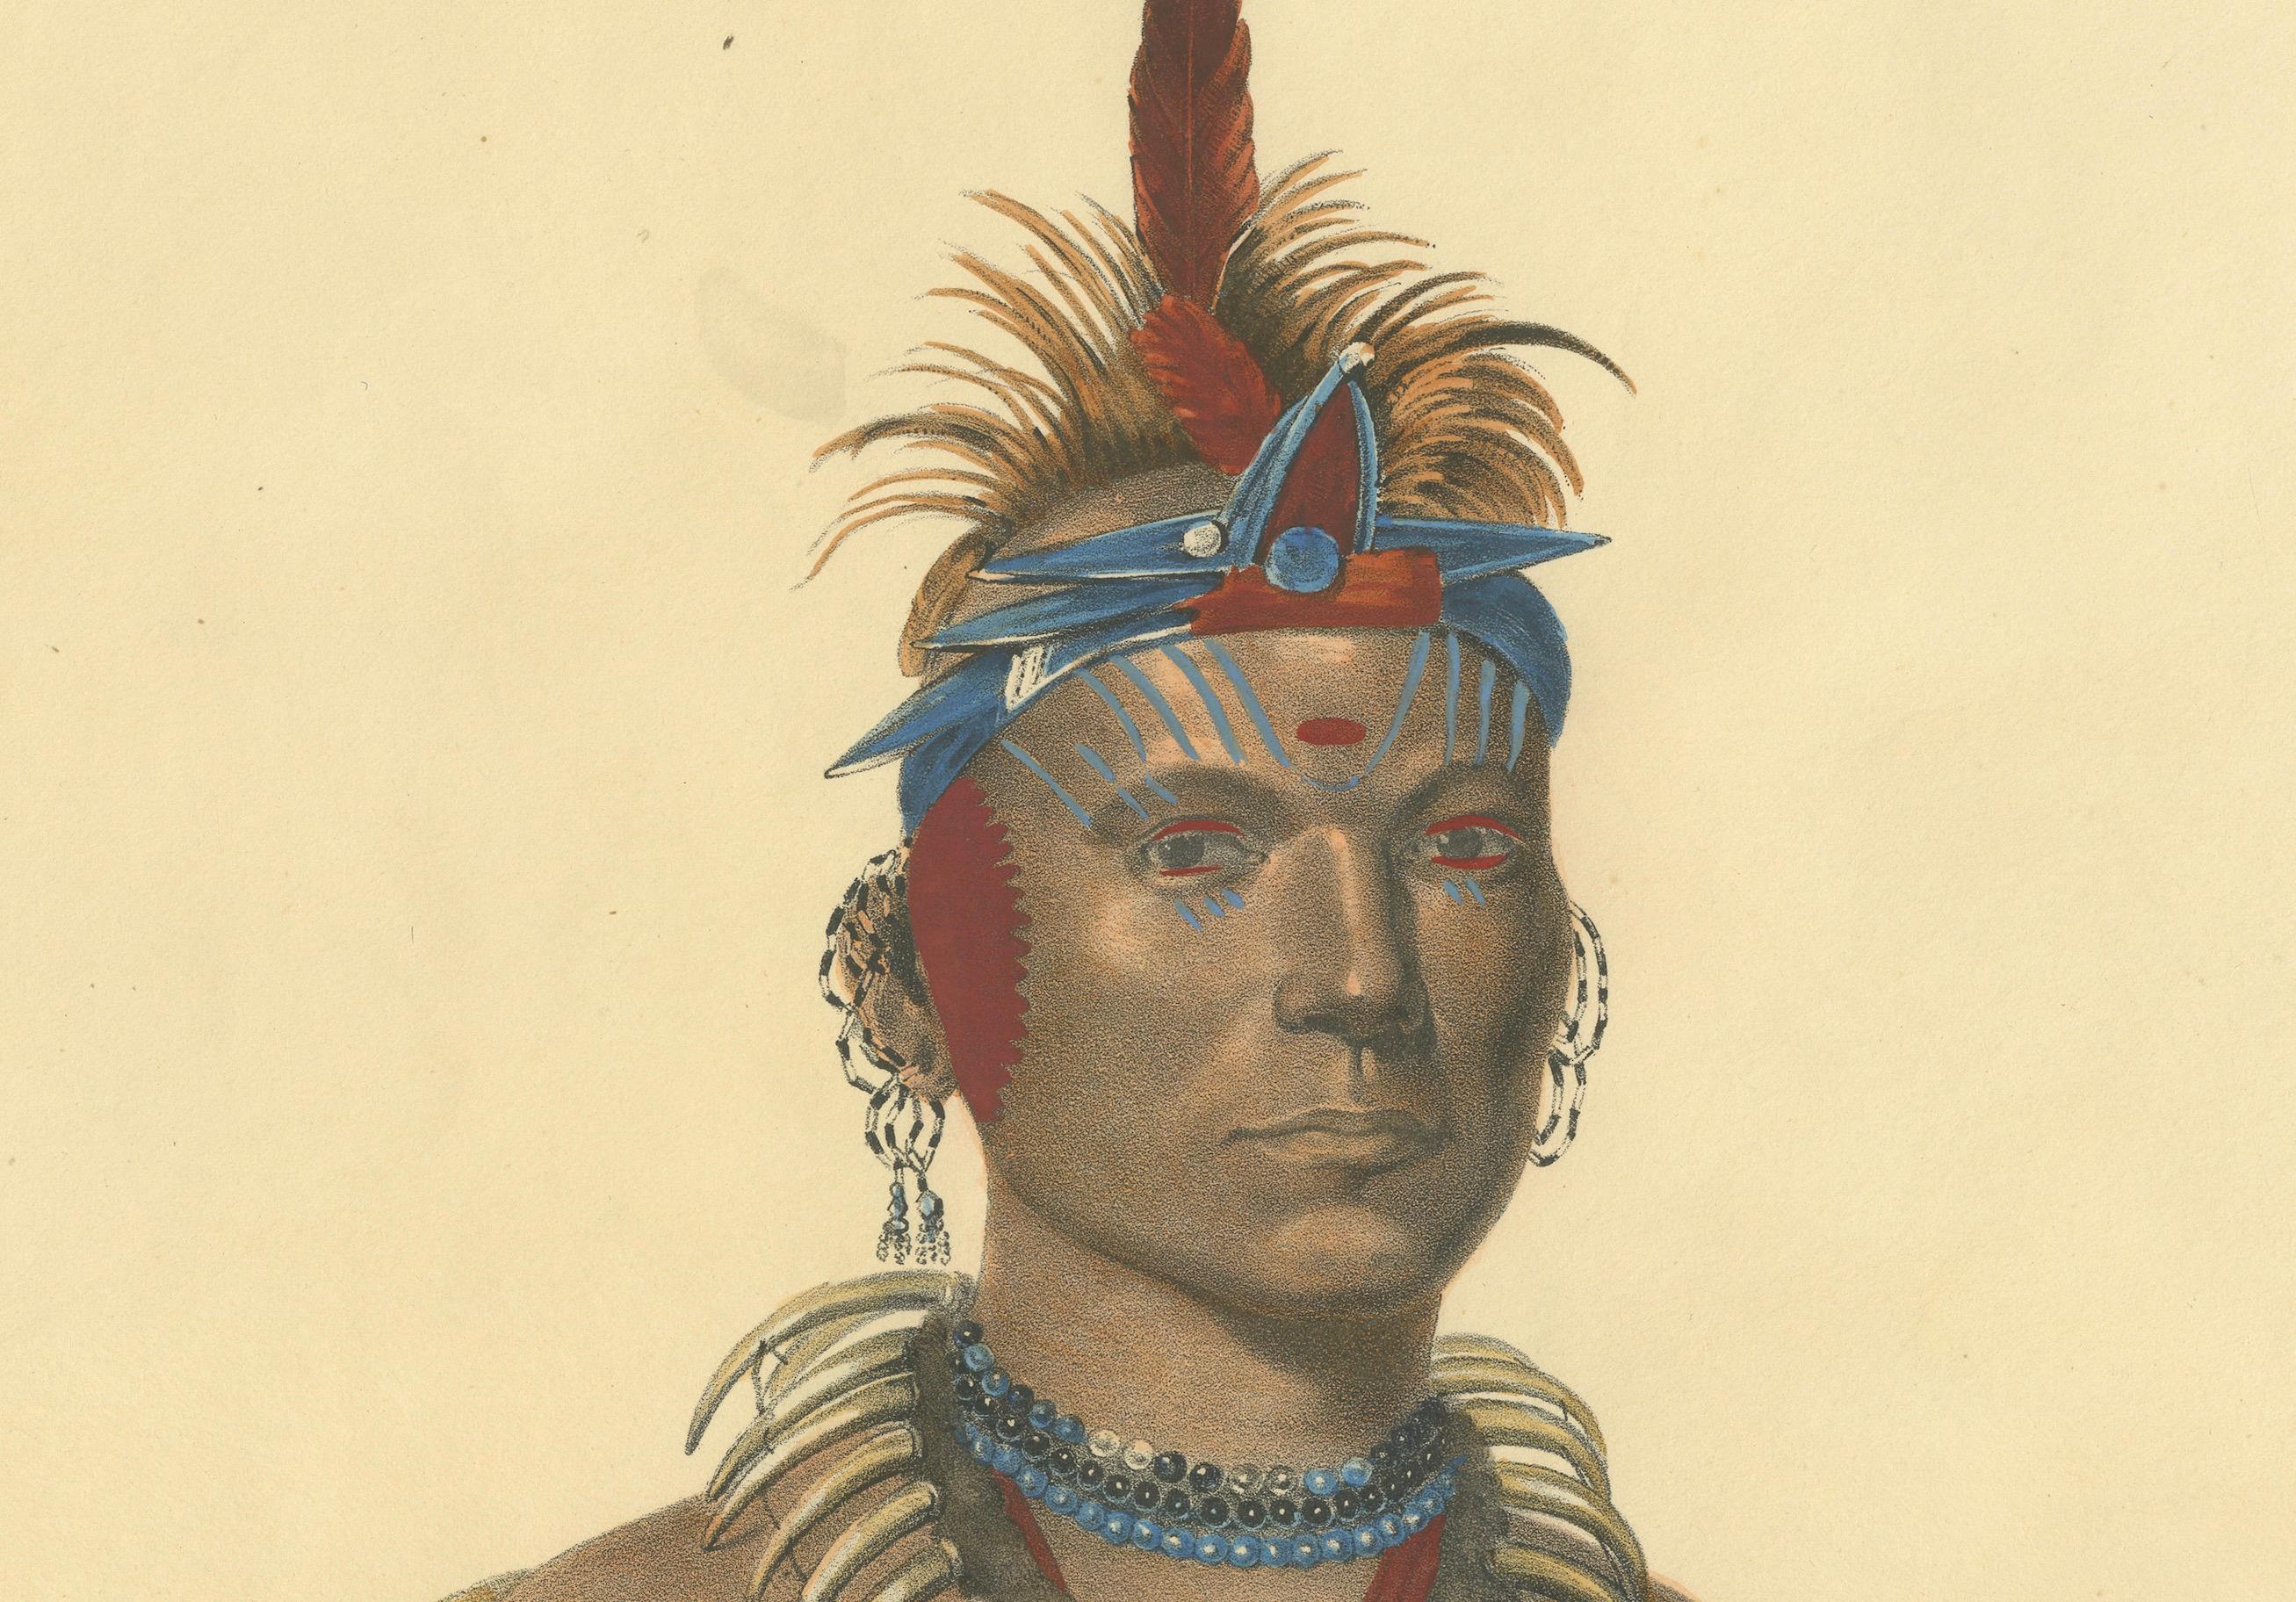 Le gardien des plaines : Chono Ca Pe, un chef Otoe

Il s'agit d'une lithographie coloriée à la main de Chono Ca Pe, un chef Otoe (souvent orthographié Ottoe), tirée de l'